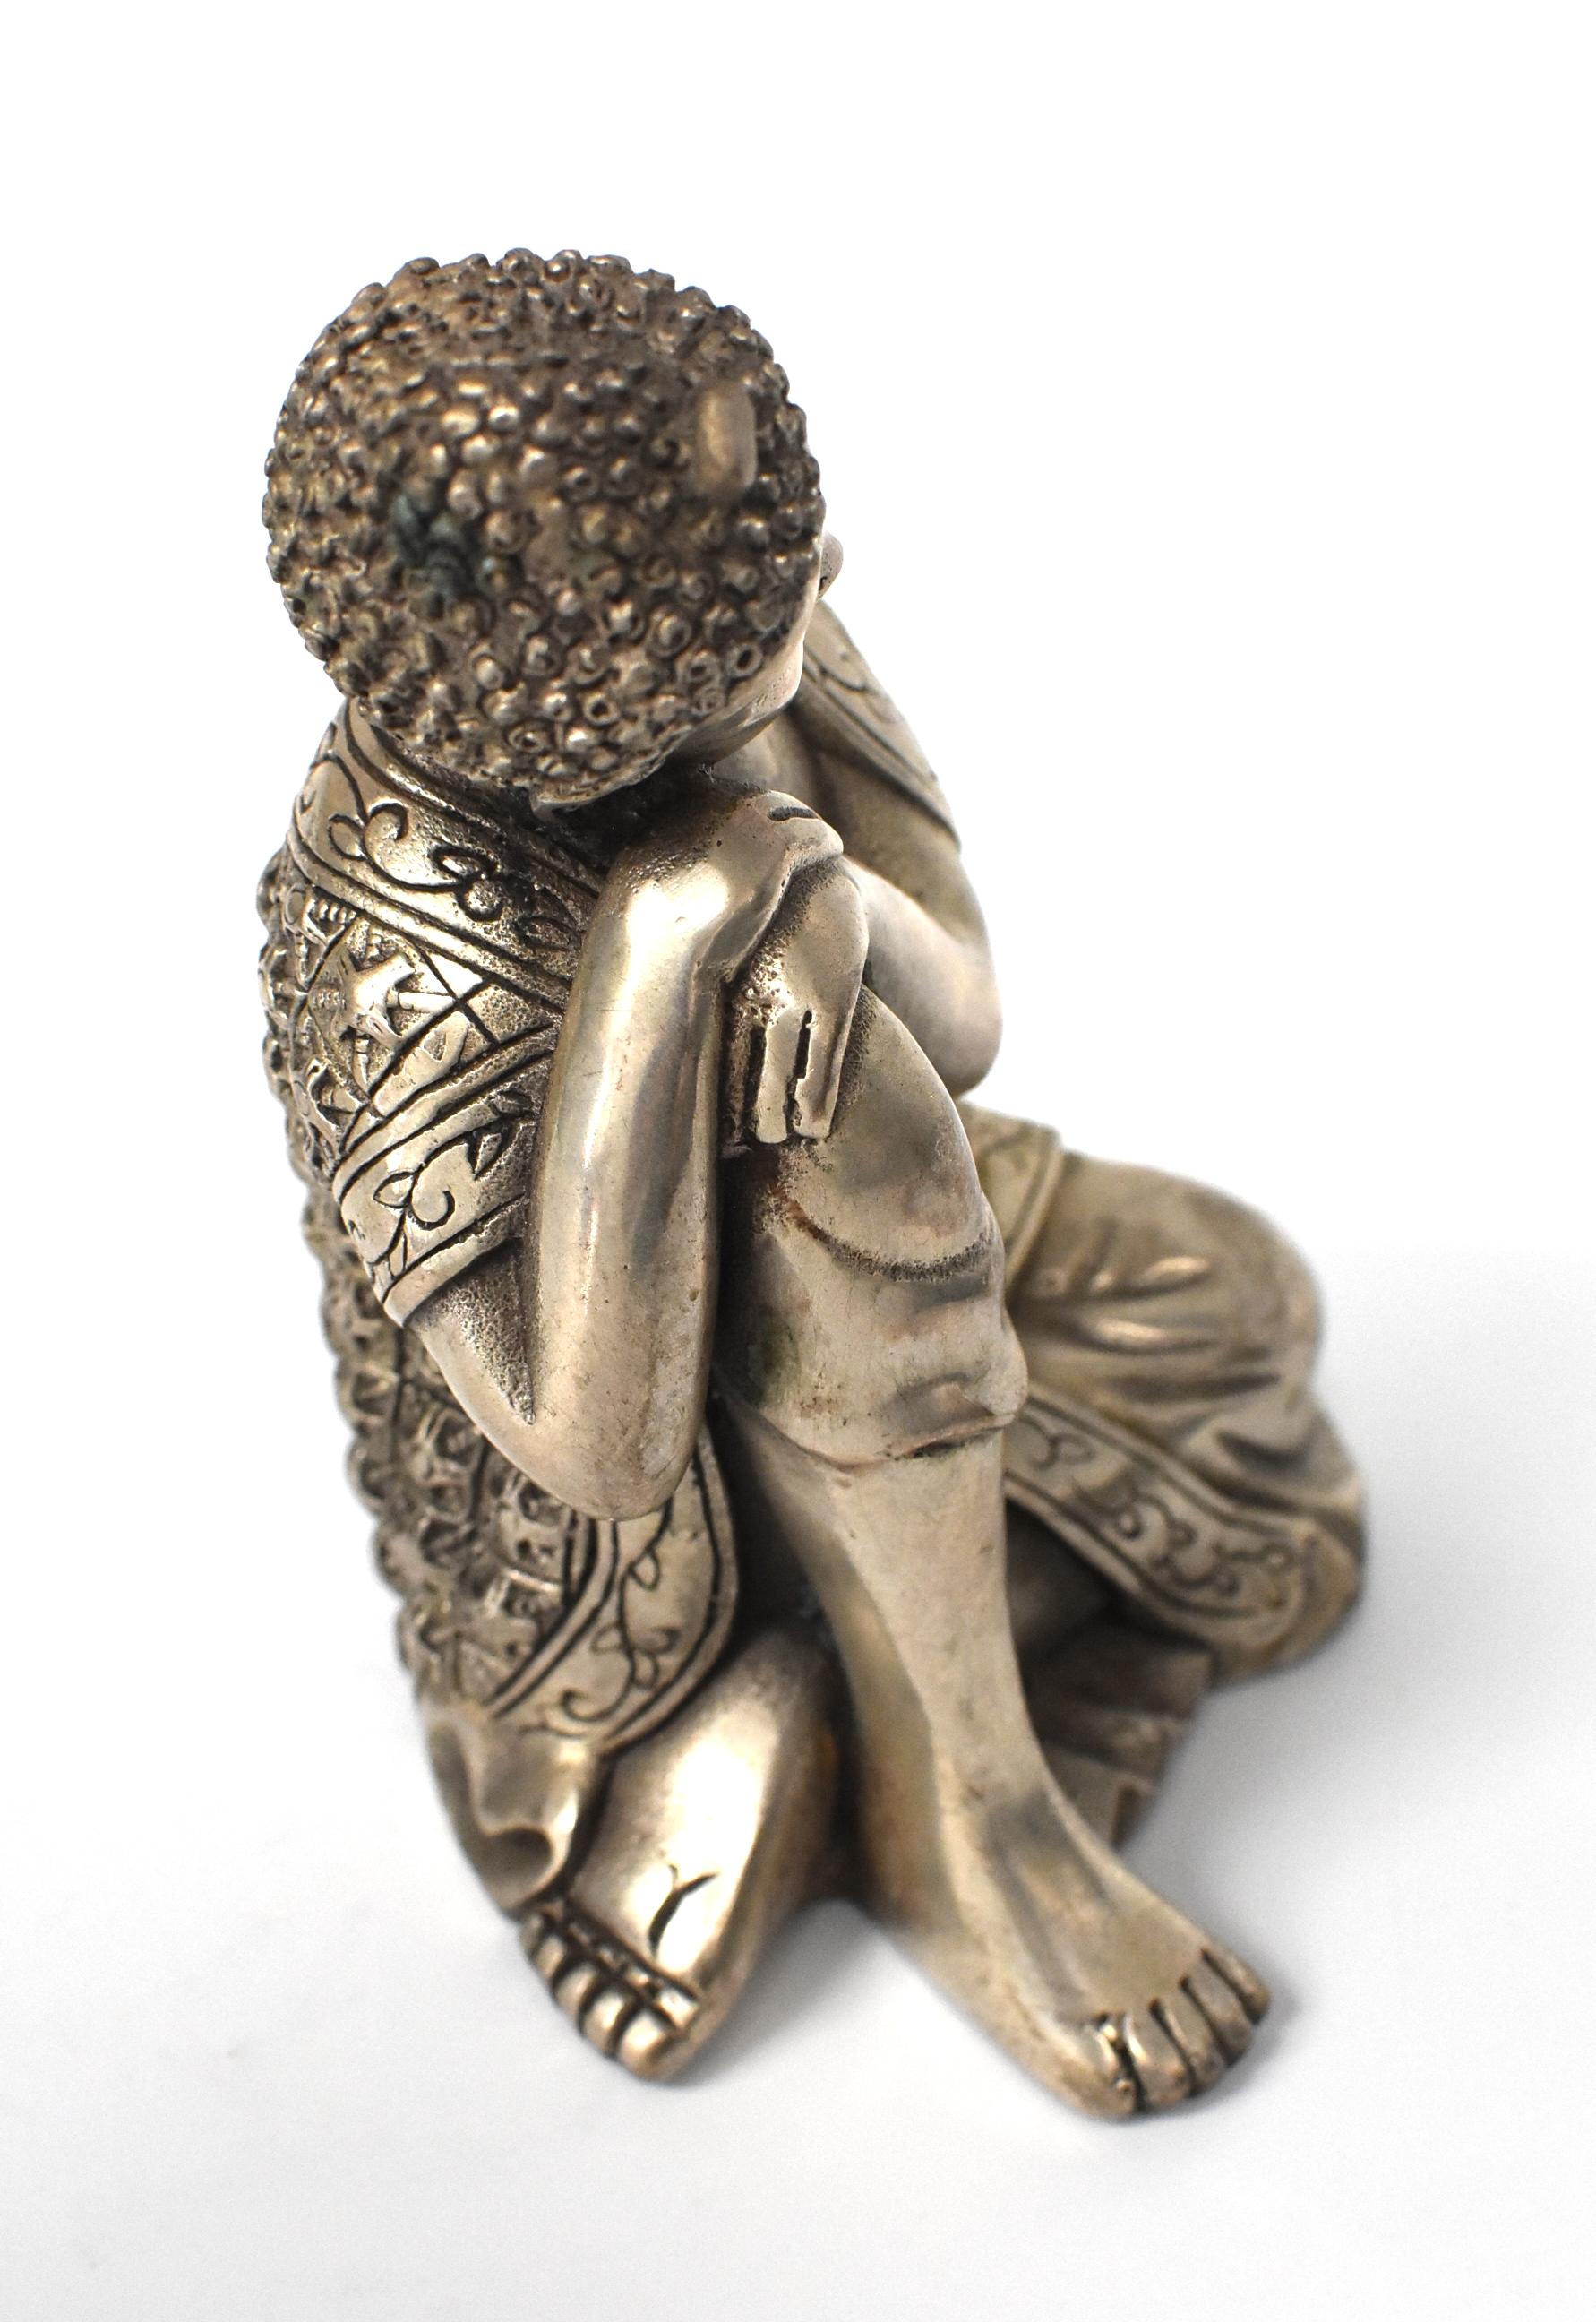 Silvered Brass Buddha Statue, a Thinking Buddha 10